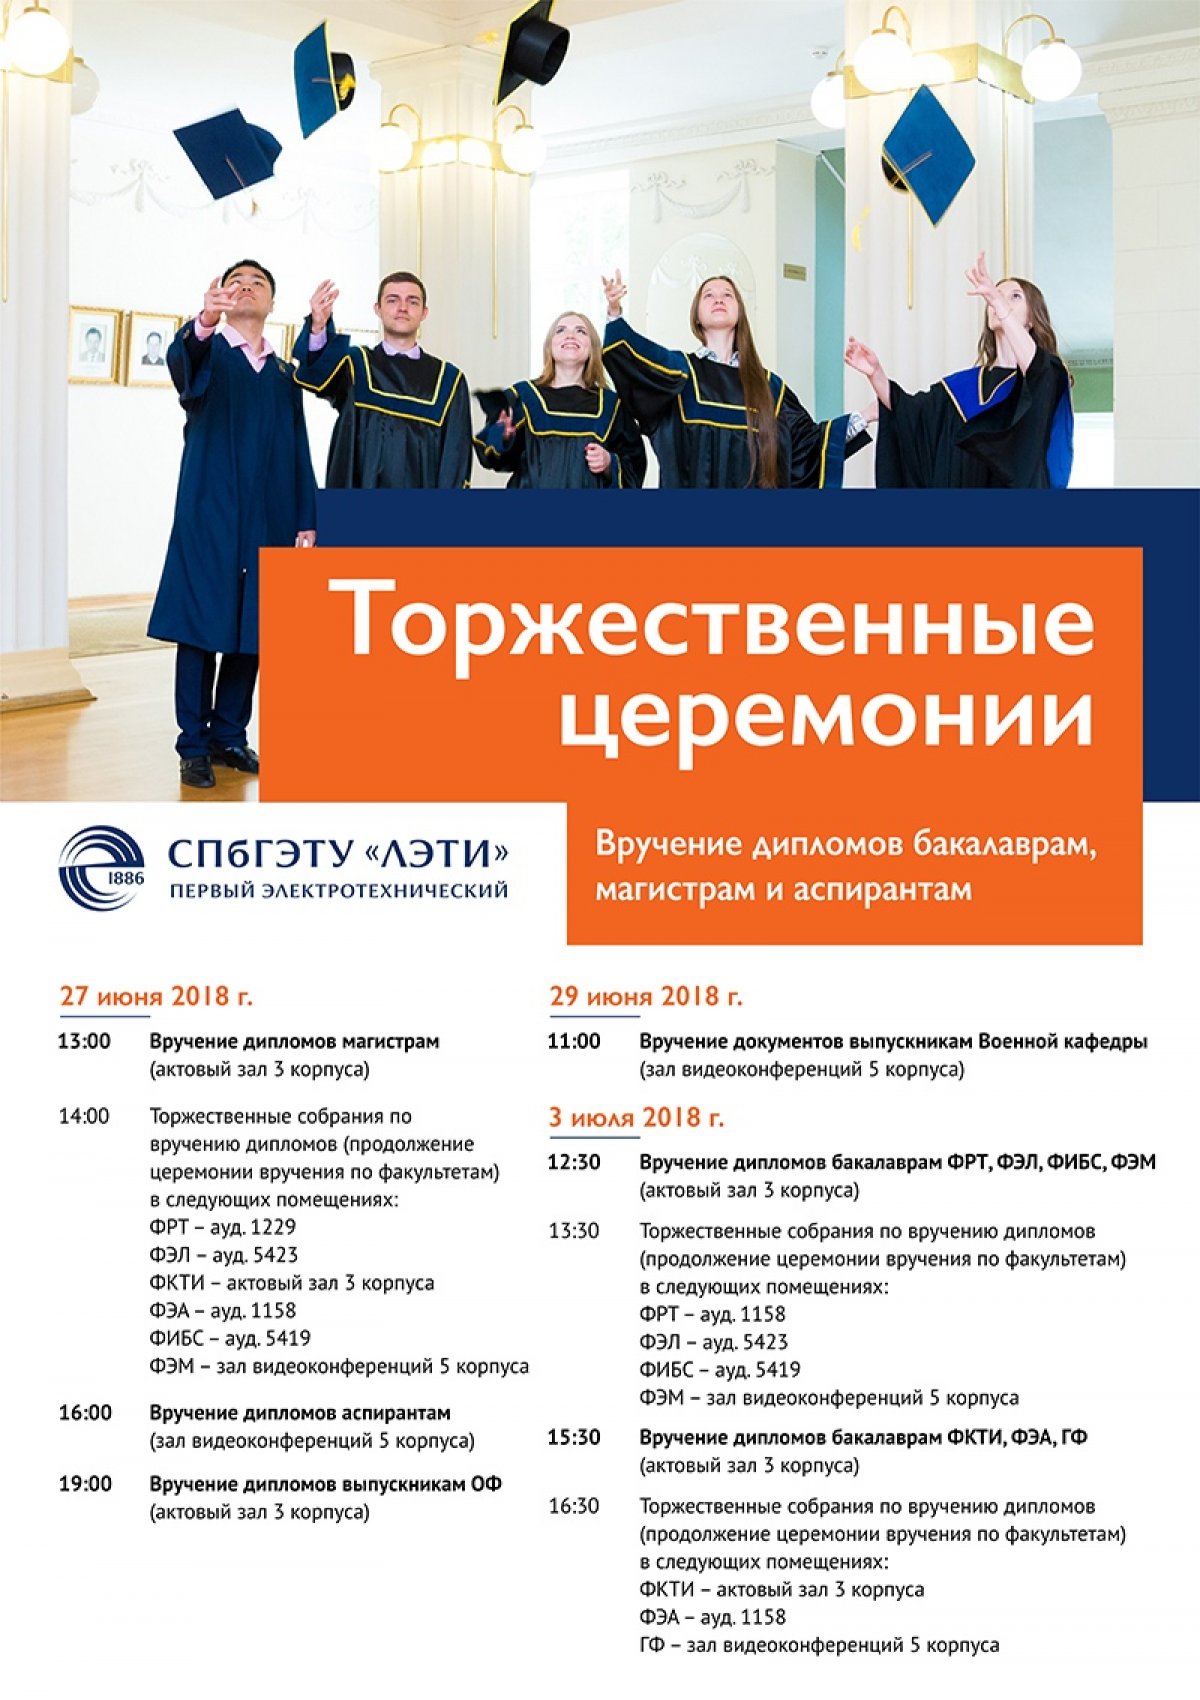 С 27 июня по 3 июля в СПбГЭТУ «ЛЭТИ» пройдут торжественные церемонии вручения дипломов бакалаврам, магистрам и аспирантам